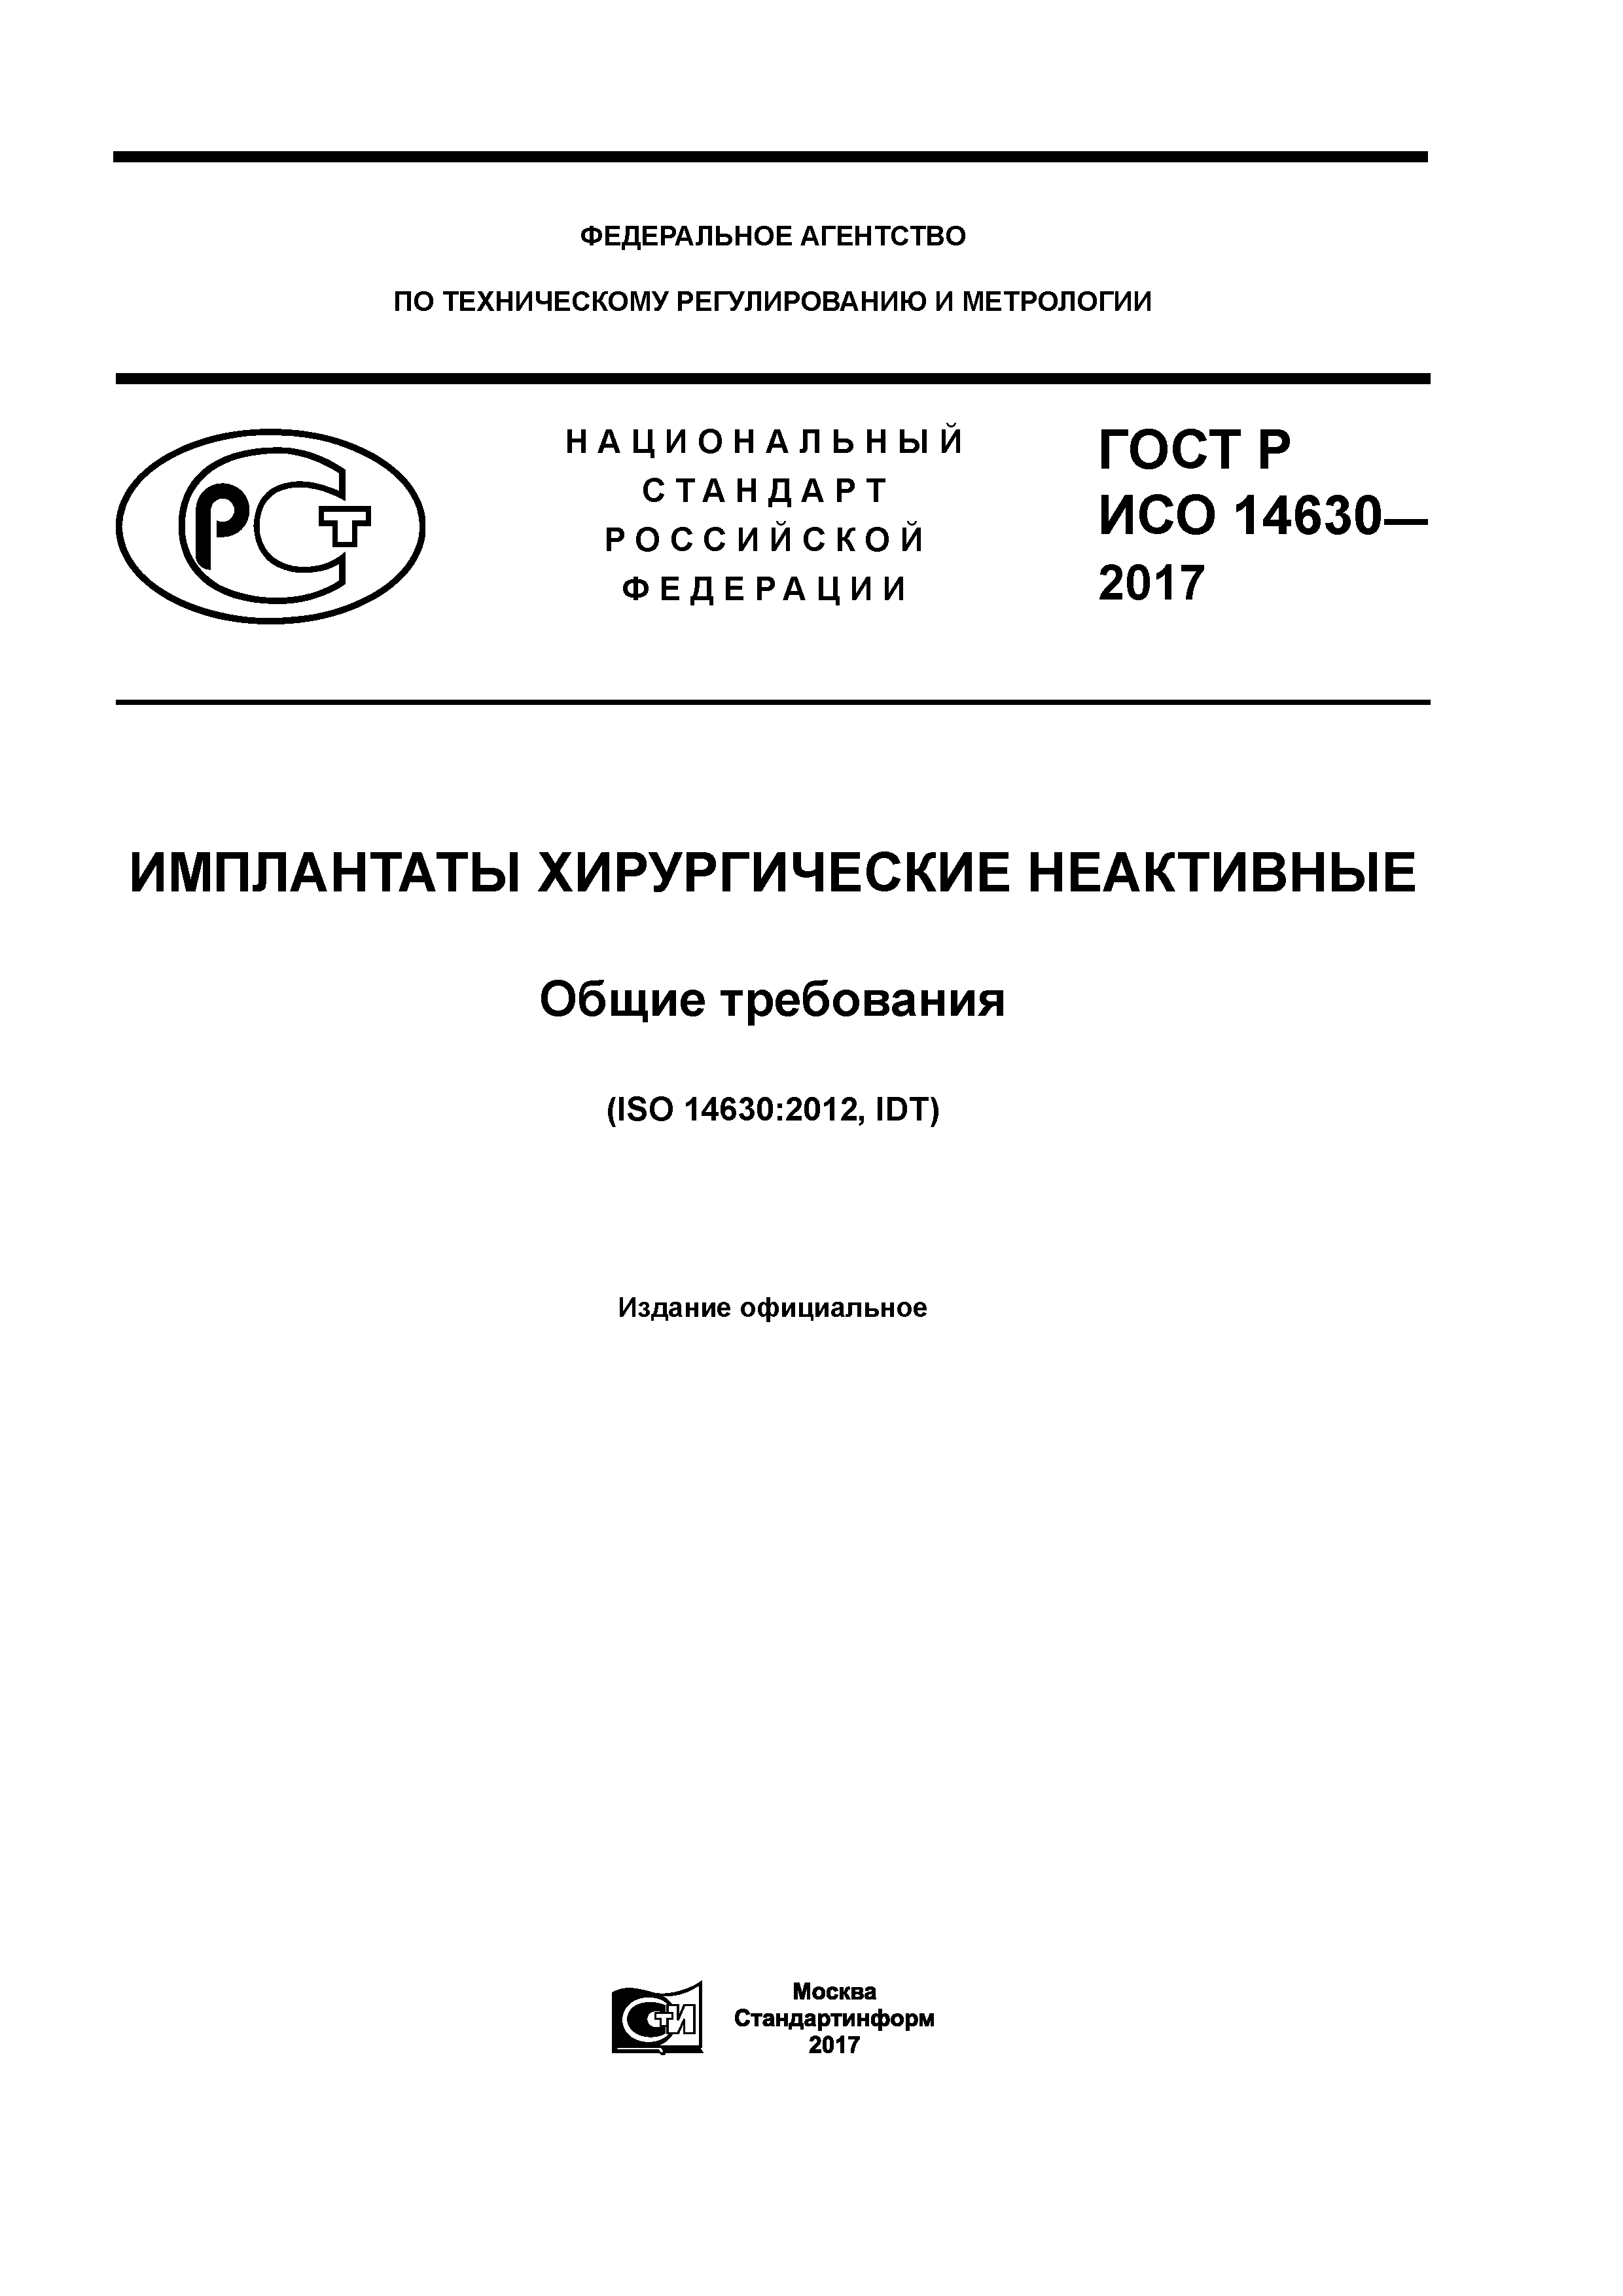 ГОСТ Р ИСО 14630-2017